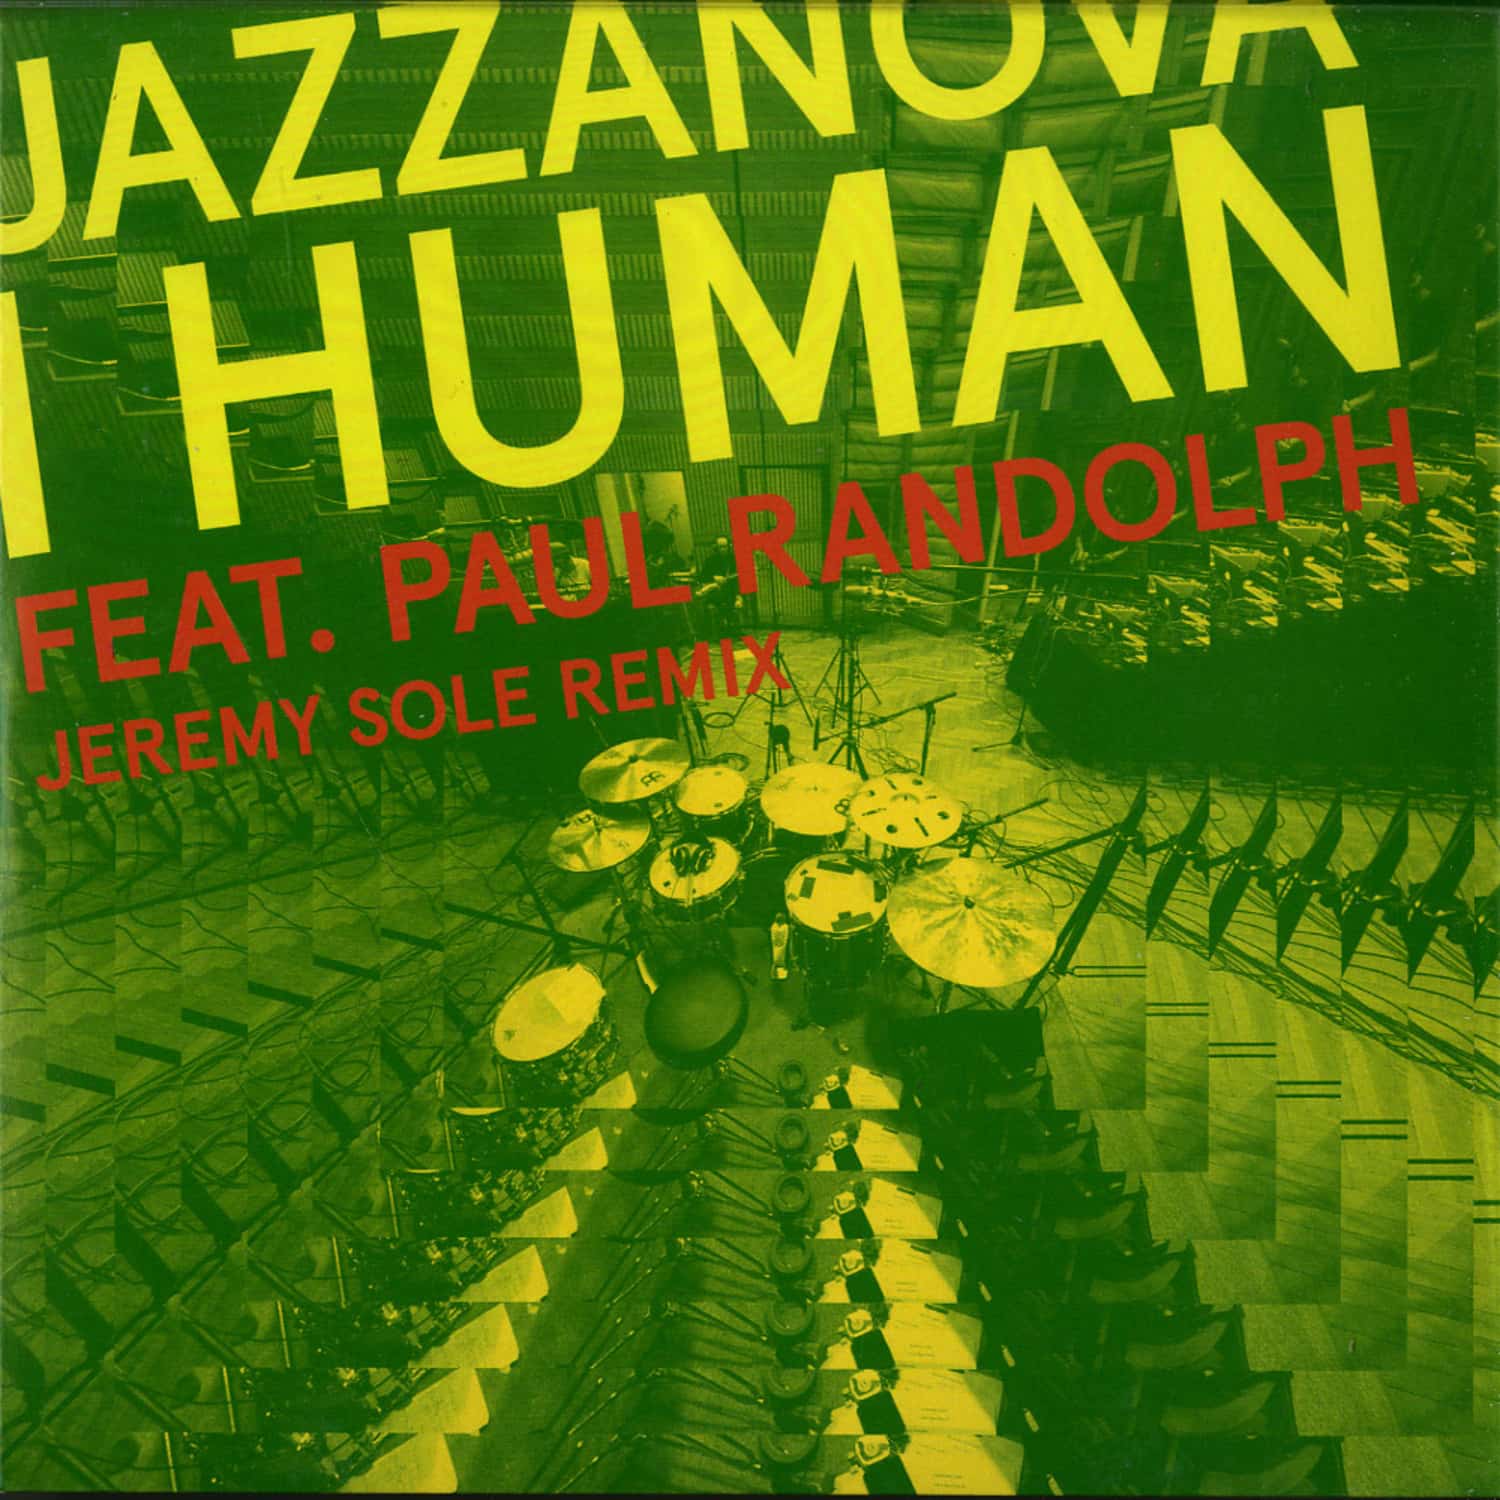 Jazzanova - I HUMAN FEAT. PAUL RANDOLPH 